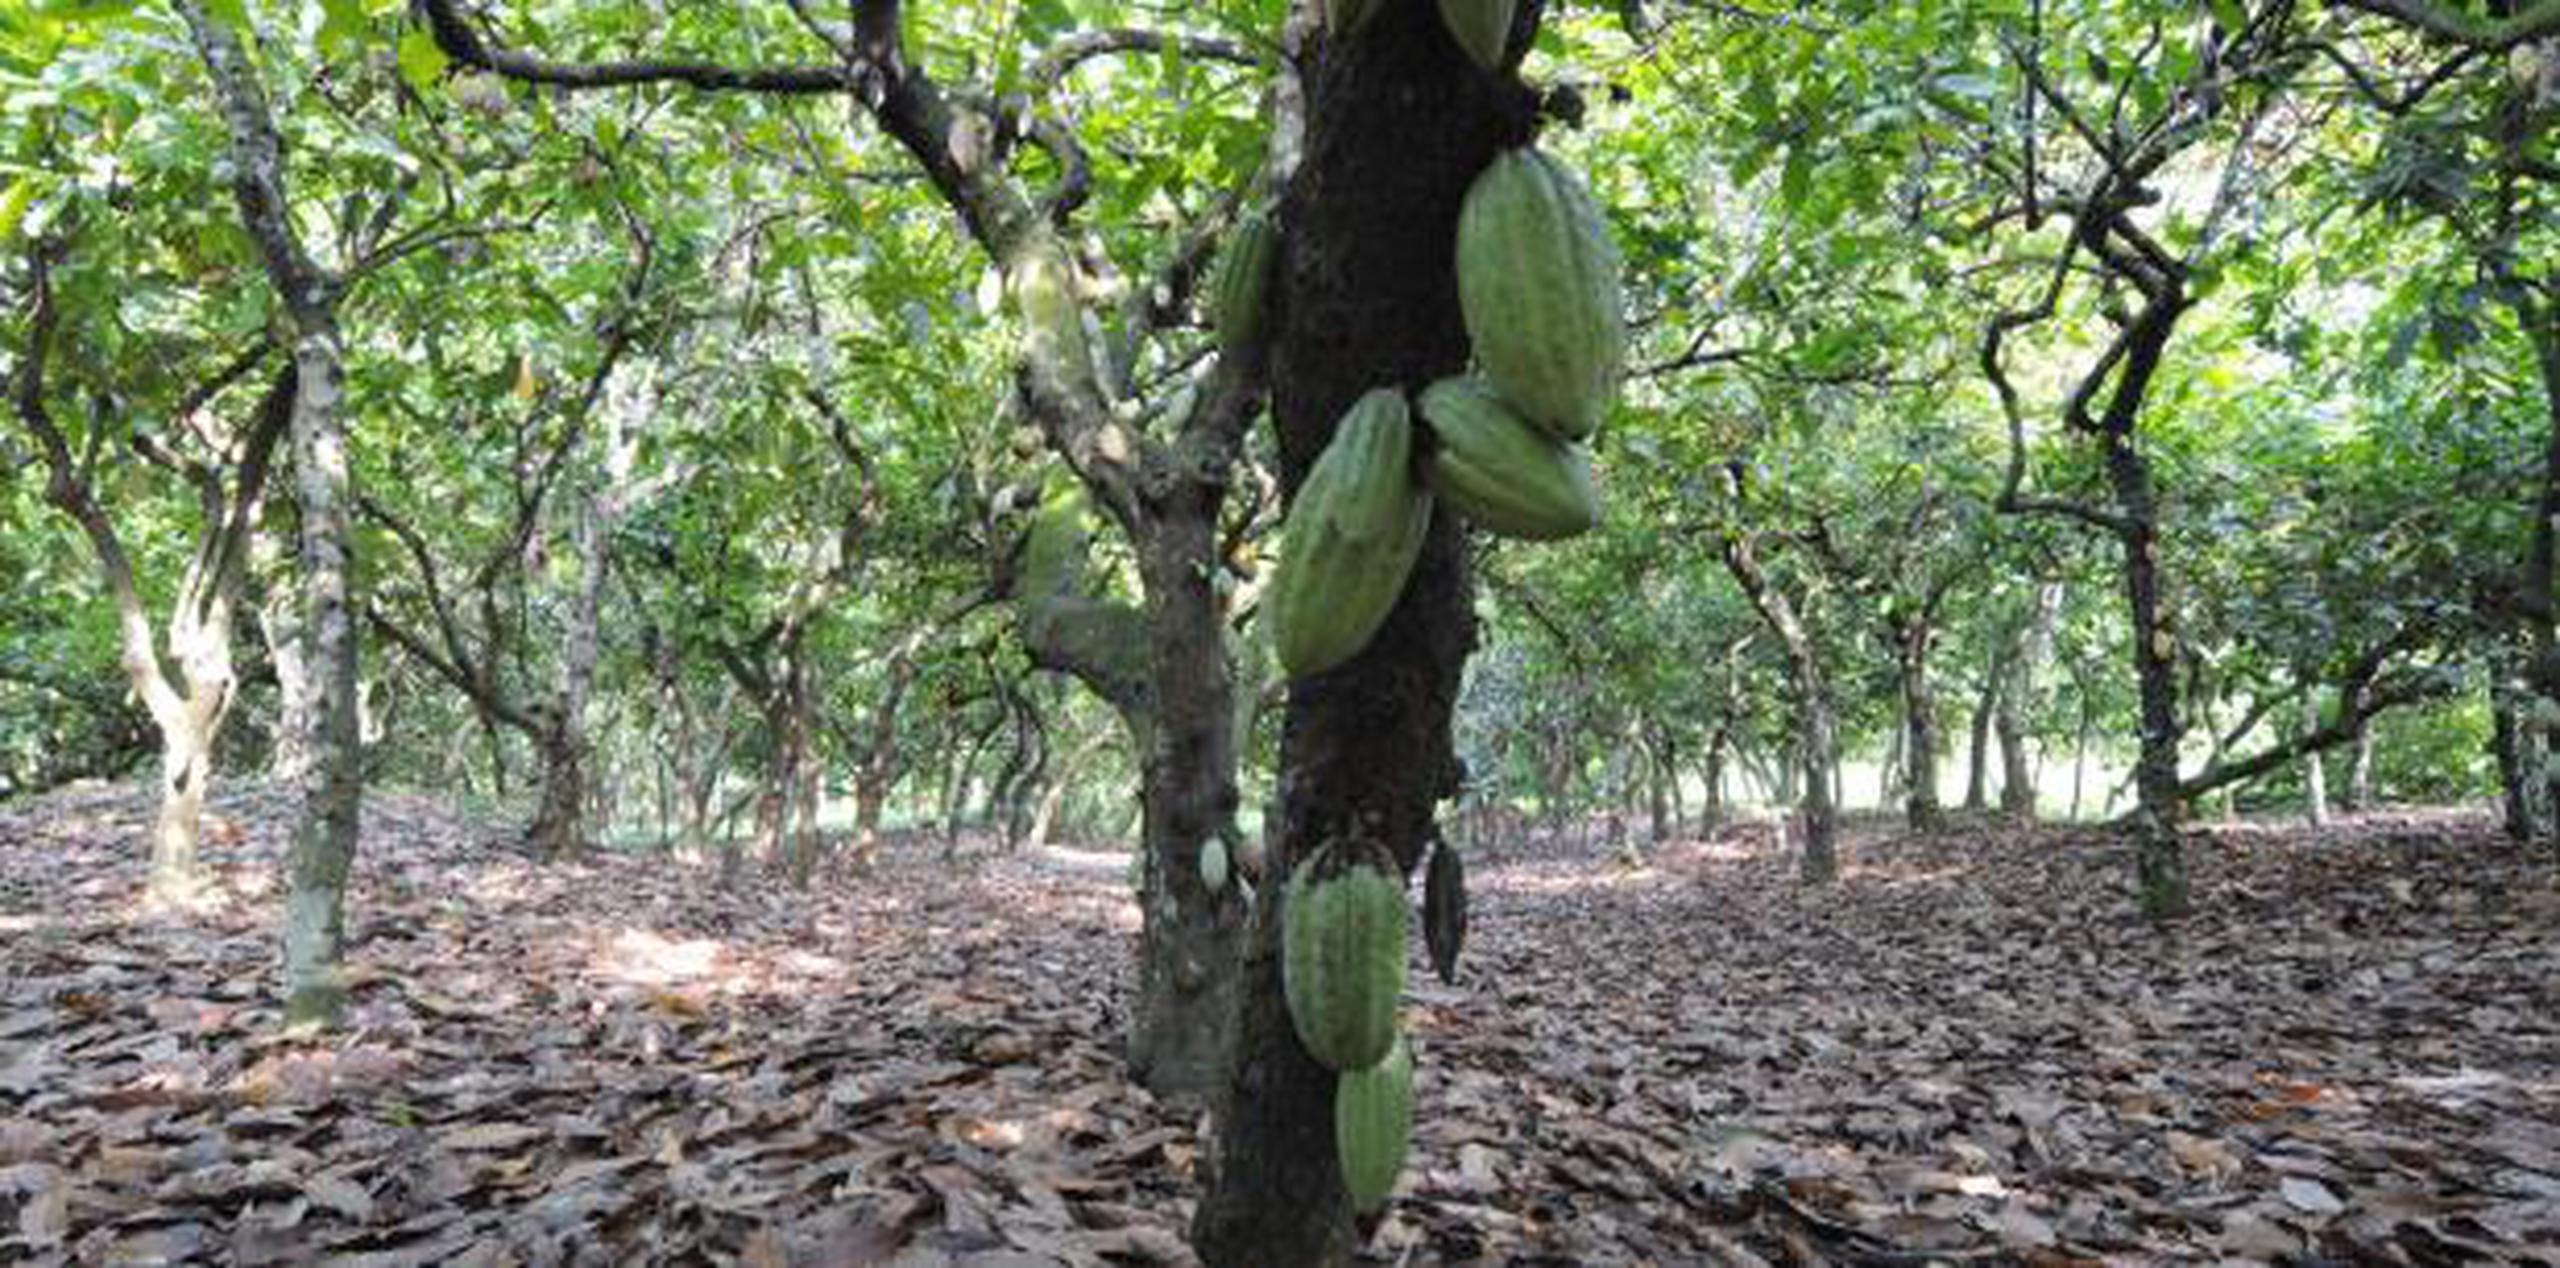 "Estamos confiados en que, como resultado de este proyecto, lograremos incrementar dramáticamente nuestras compras de cacao de Puerto Rico", explicó el vicepresidente de Cortés Hermanos, Eduardo Cortés. (archivo)